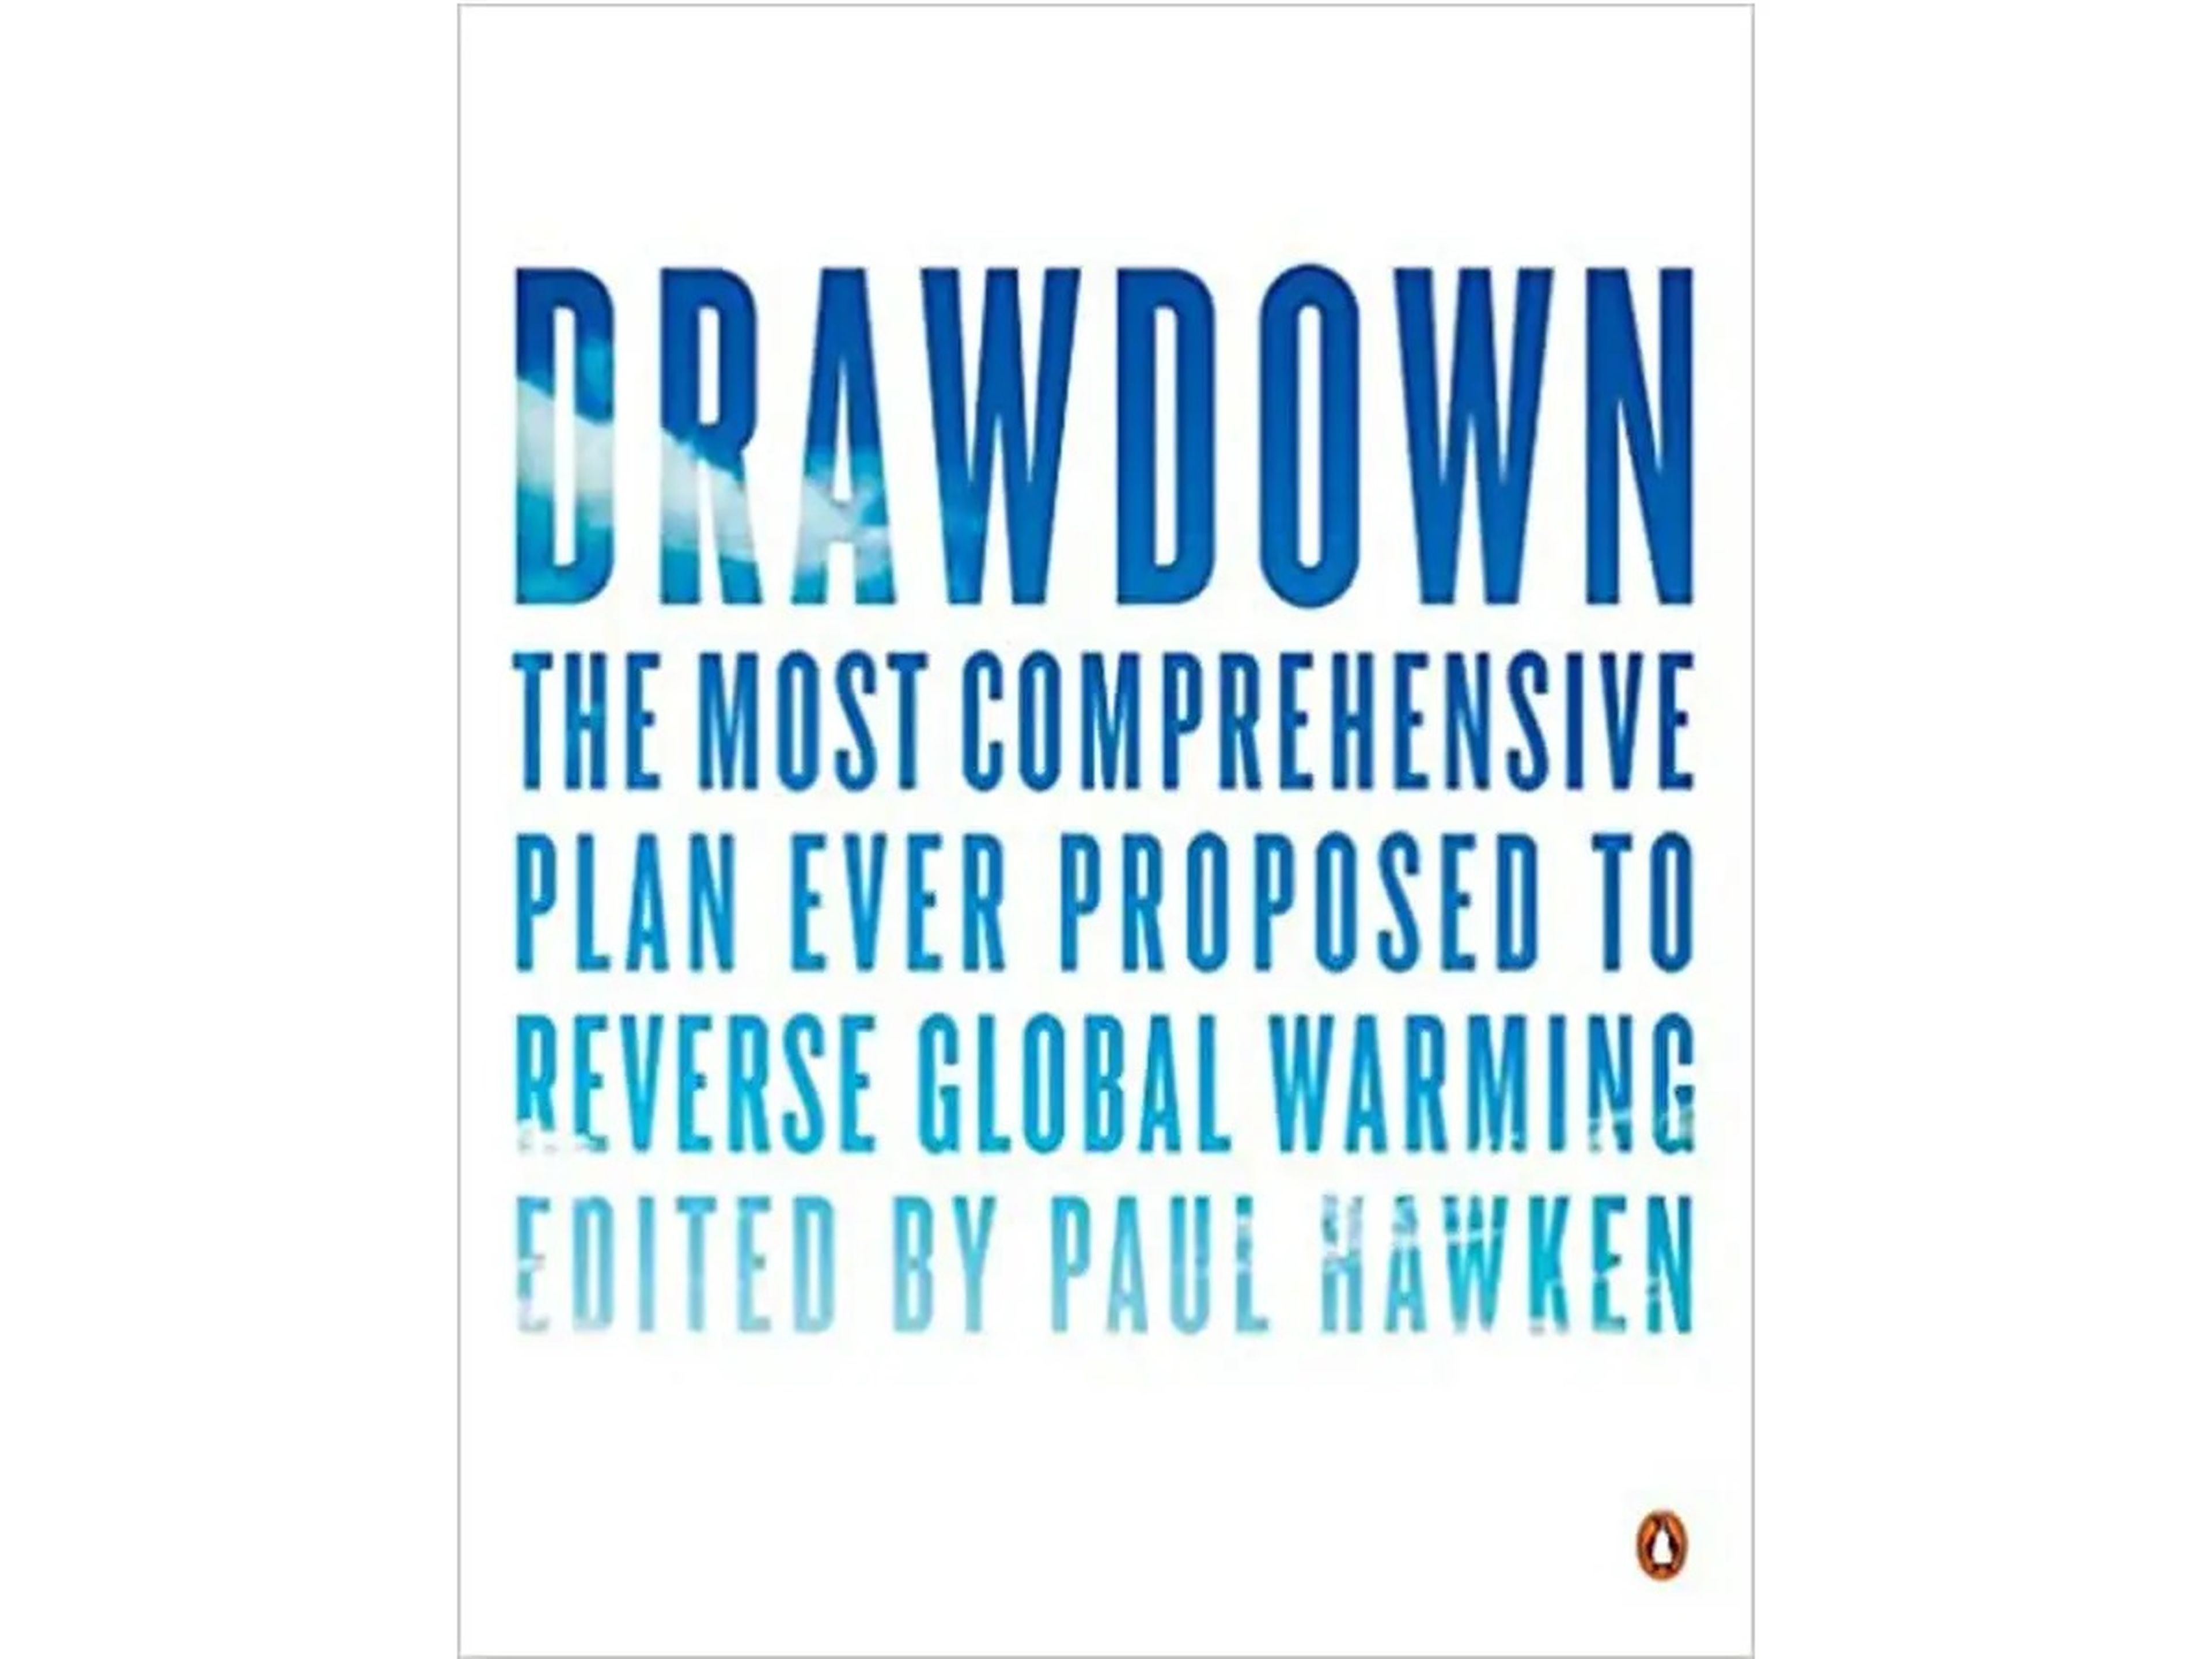 Reducción: El plan más completo jamás propuesto para invertir el calentamiento global, editado por Paul Hawken.